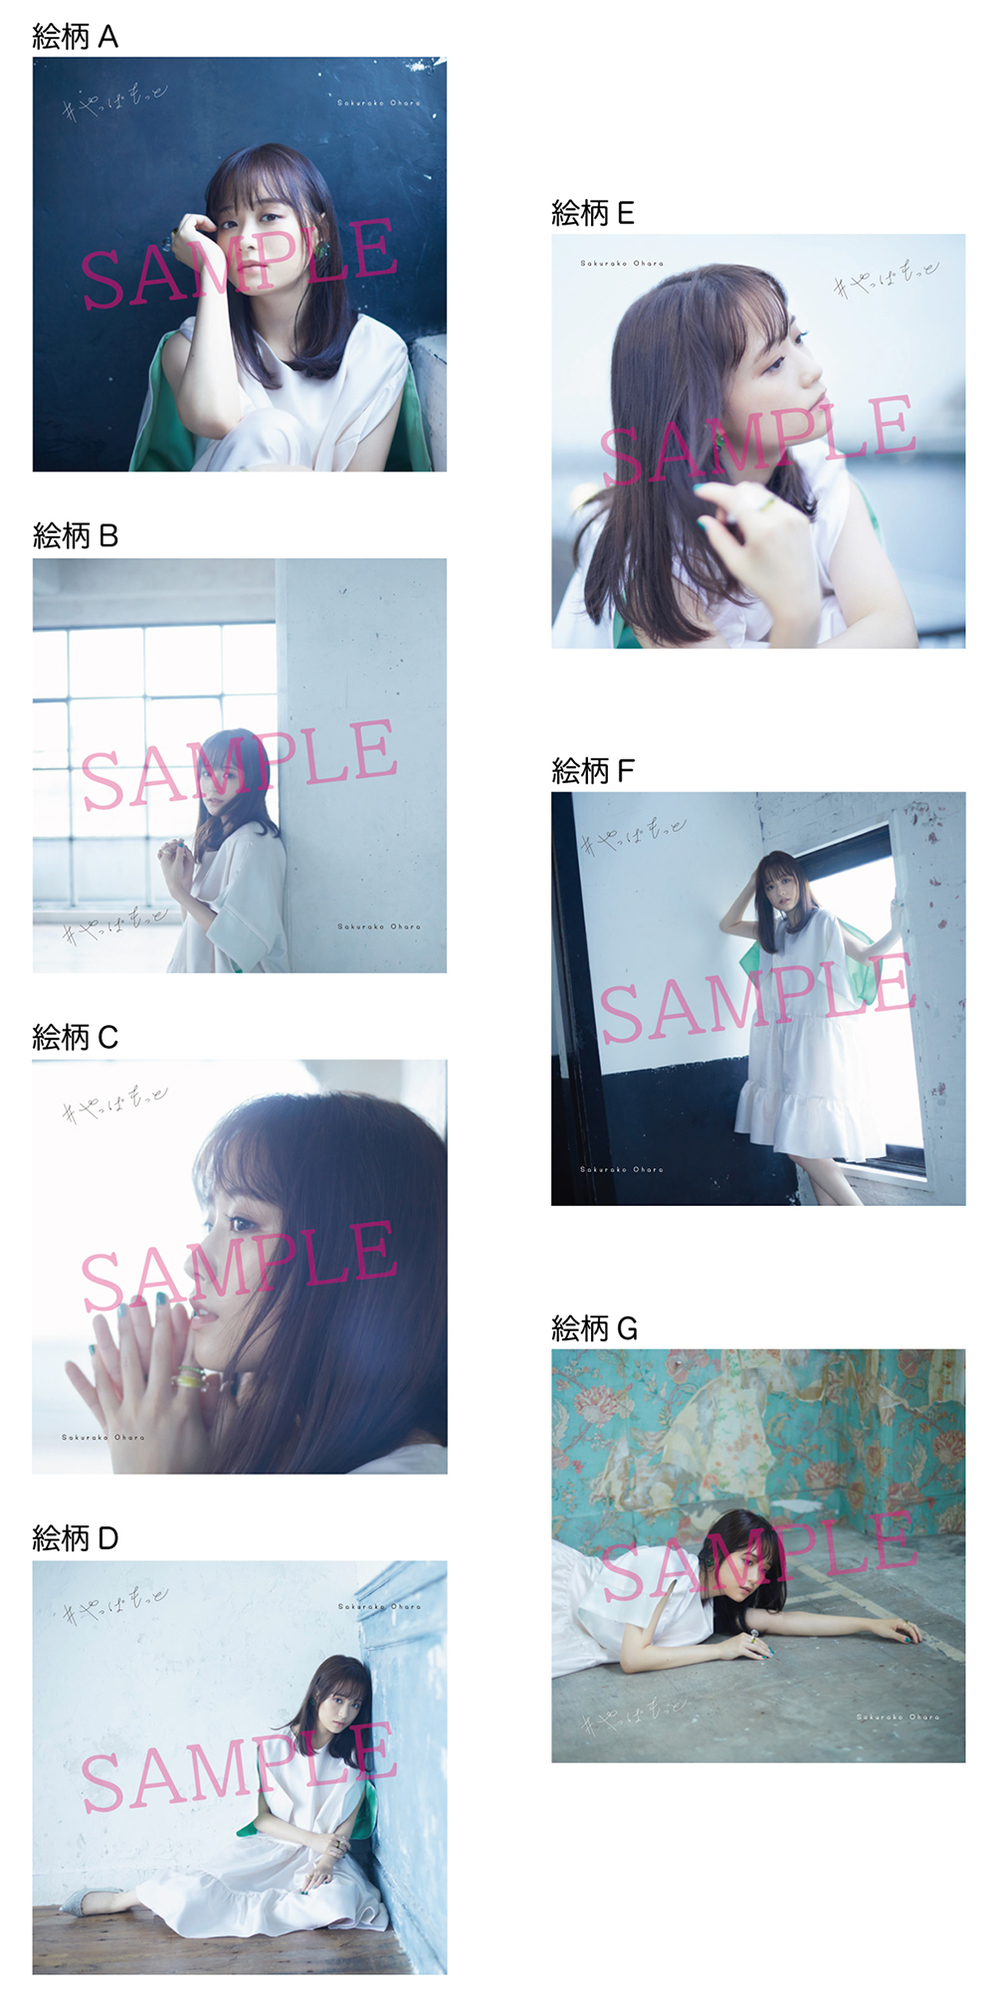 9 30リリースの新曲 やっぱもっと のジャケットと先着予約 購入特典のビジュアルを公開 Sakurako Ohara Official Site